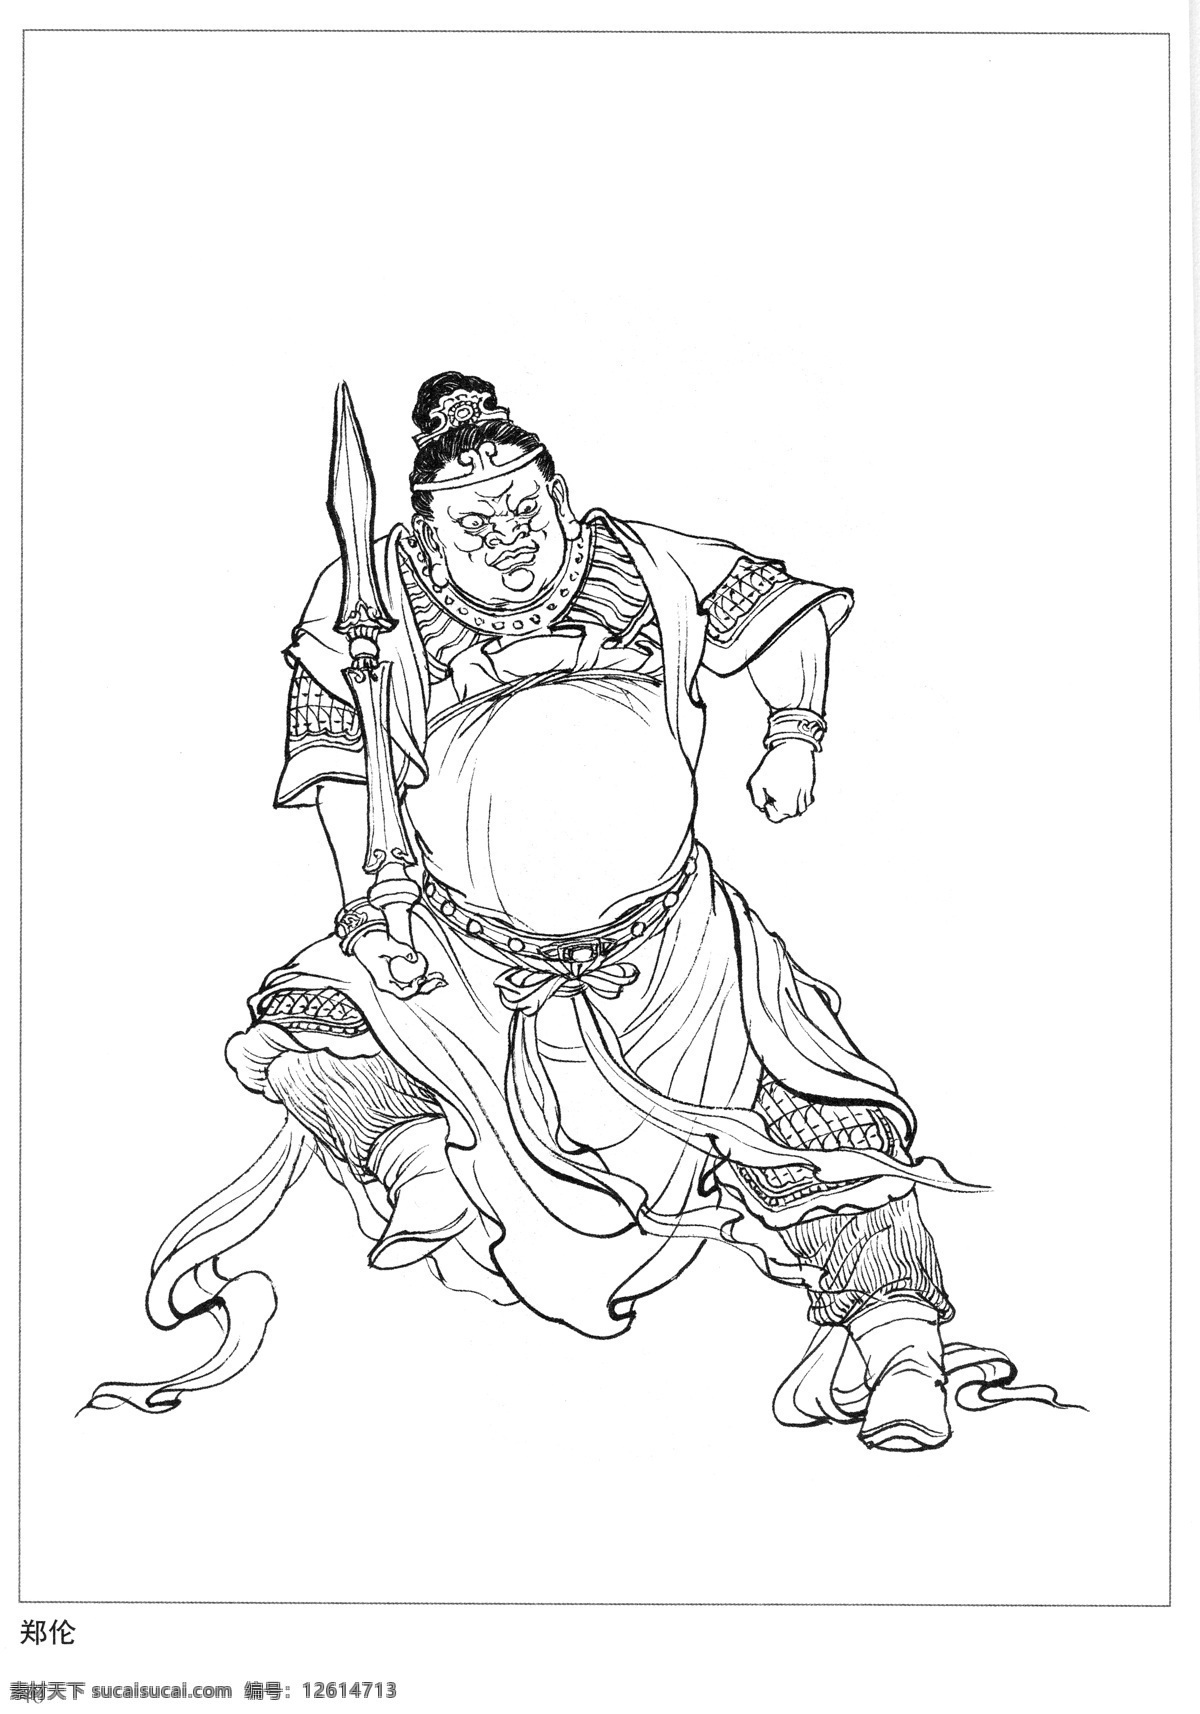 郑伦 哼哈二将 封神演义 古代 神仙 白描 人物 图 文化艺术 传统文化